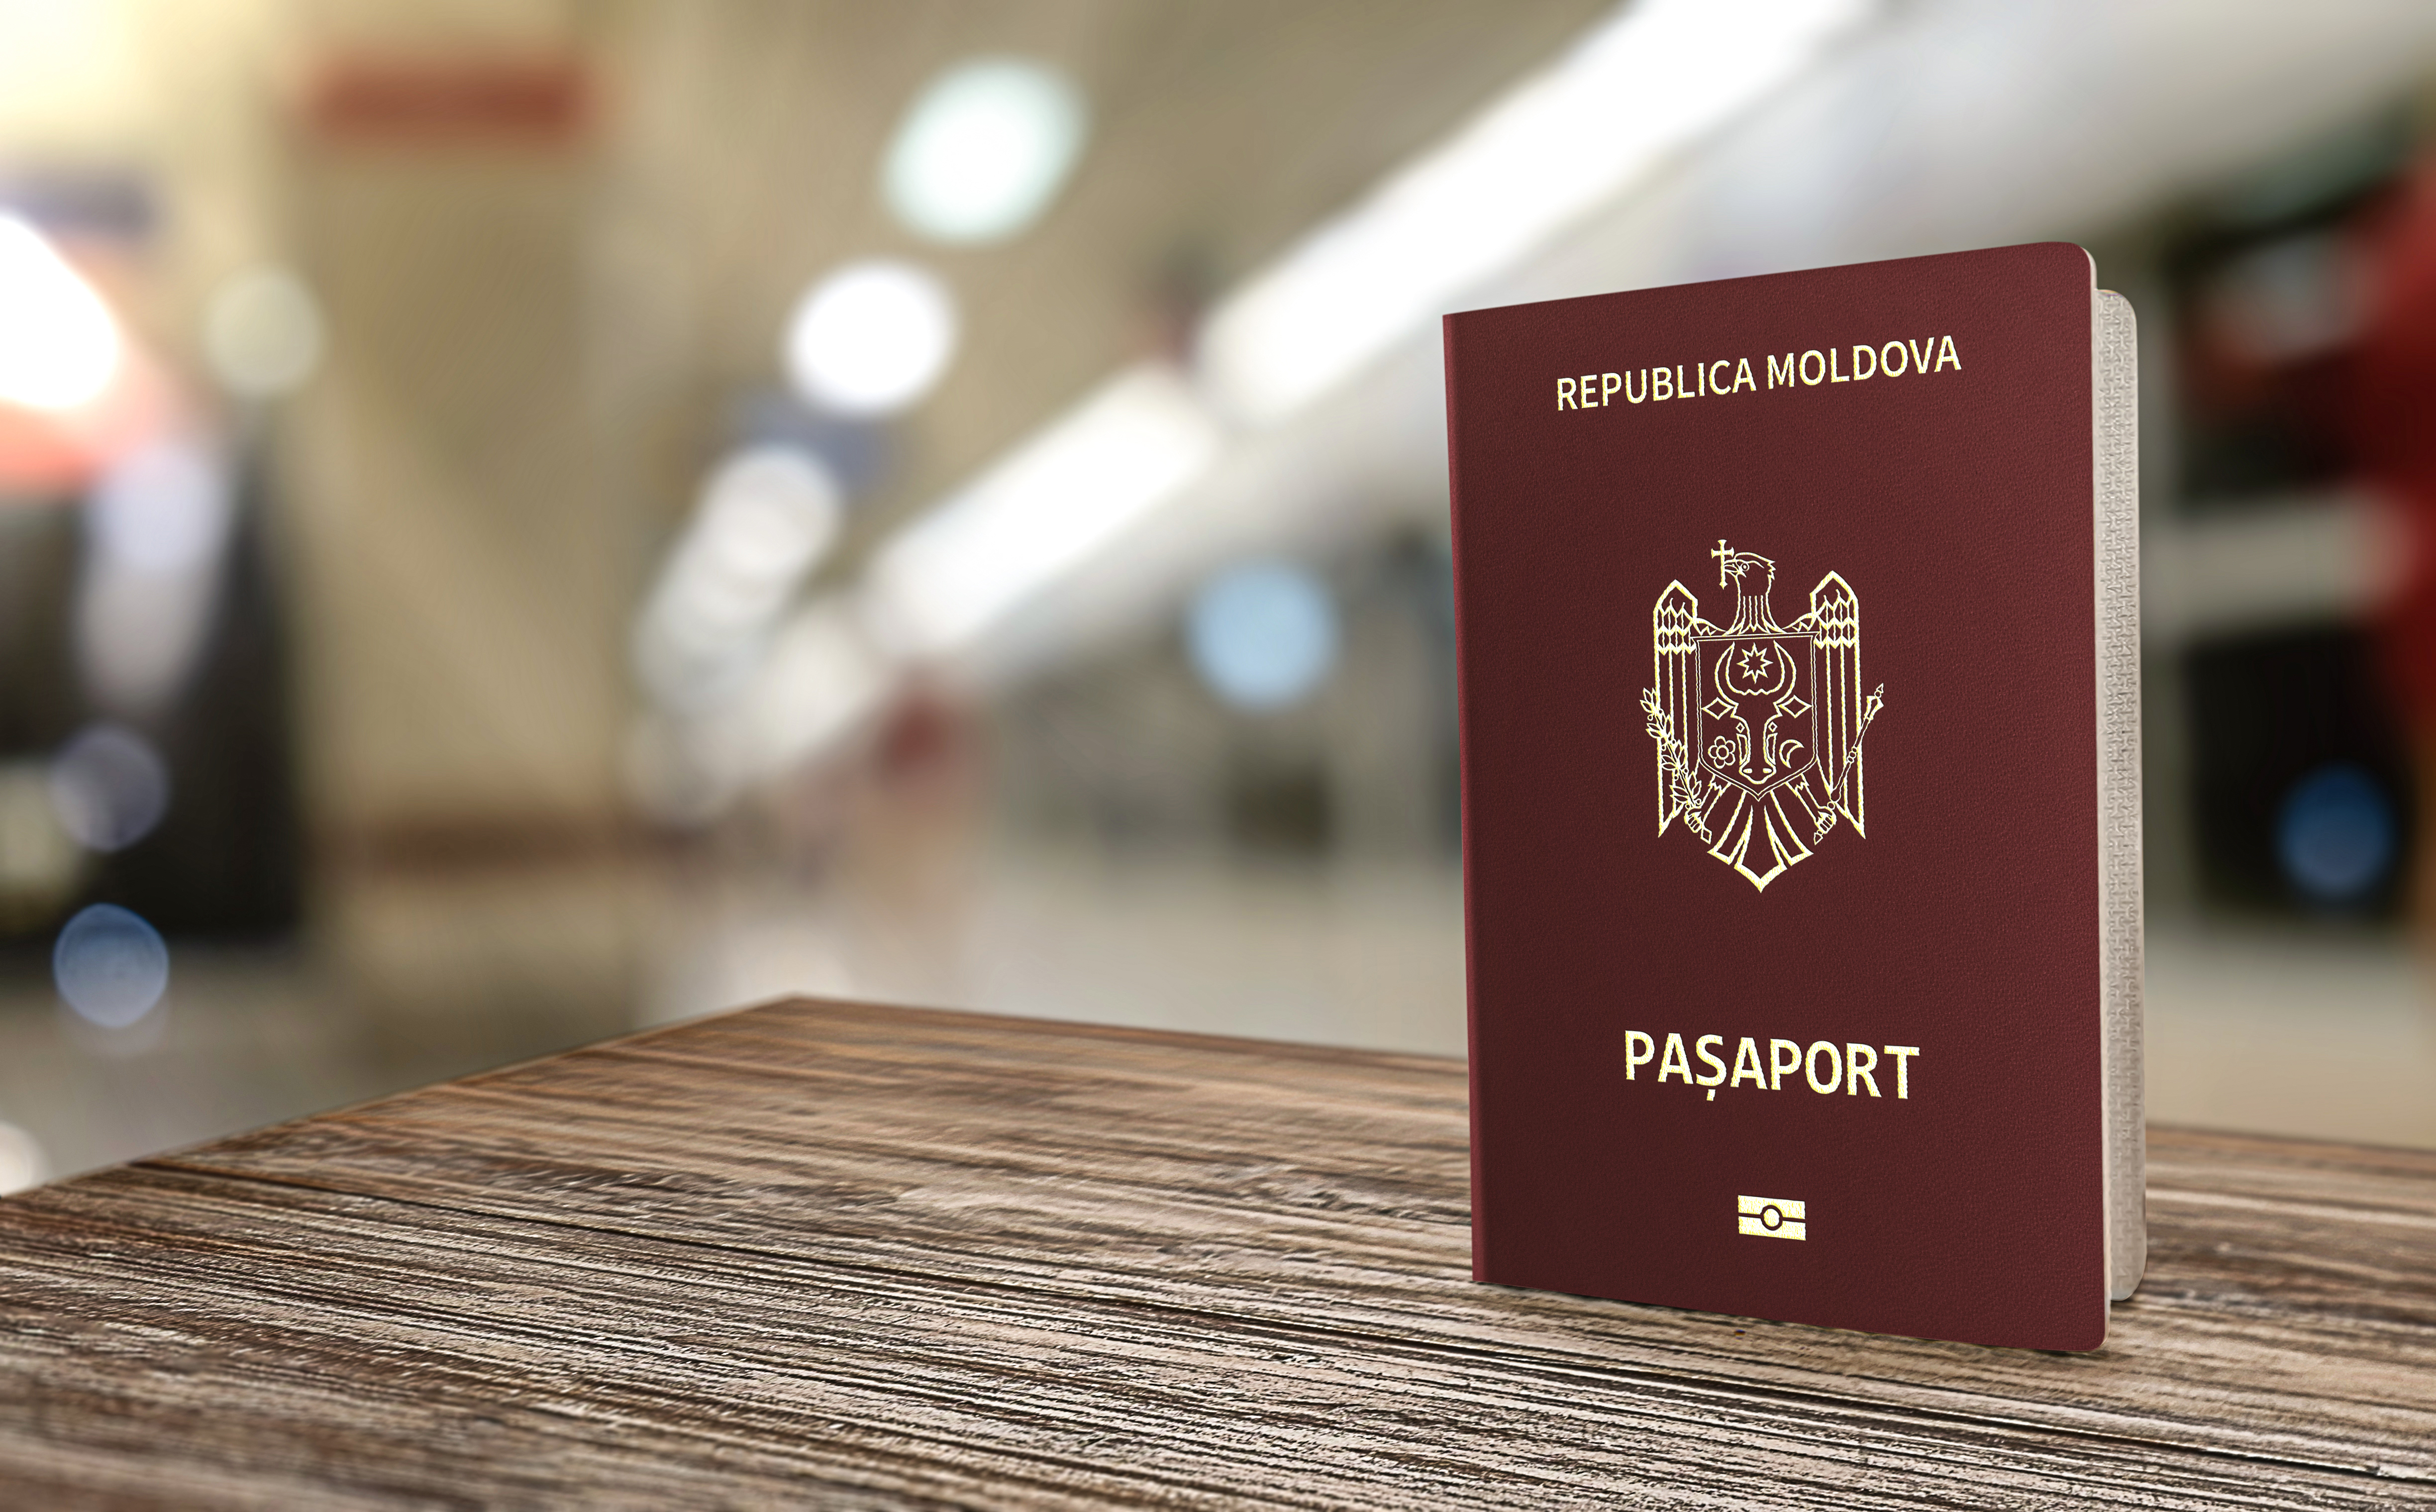 Паспорт Молдовы, граждане которой могут получить румынское гражданство